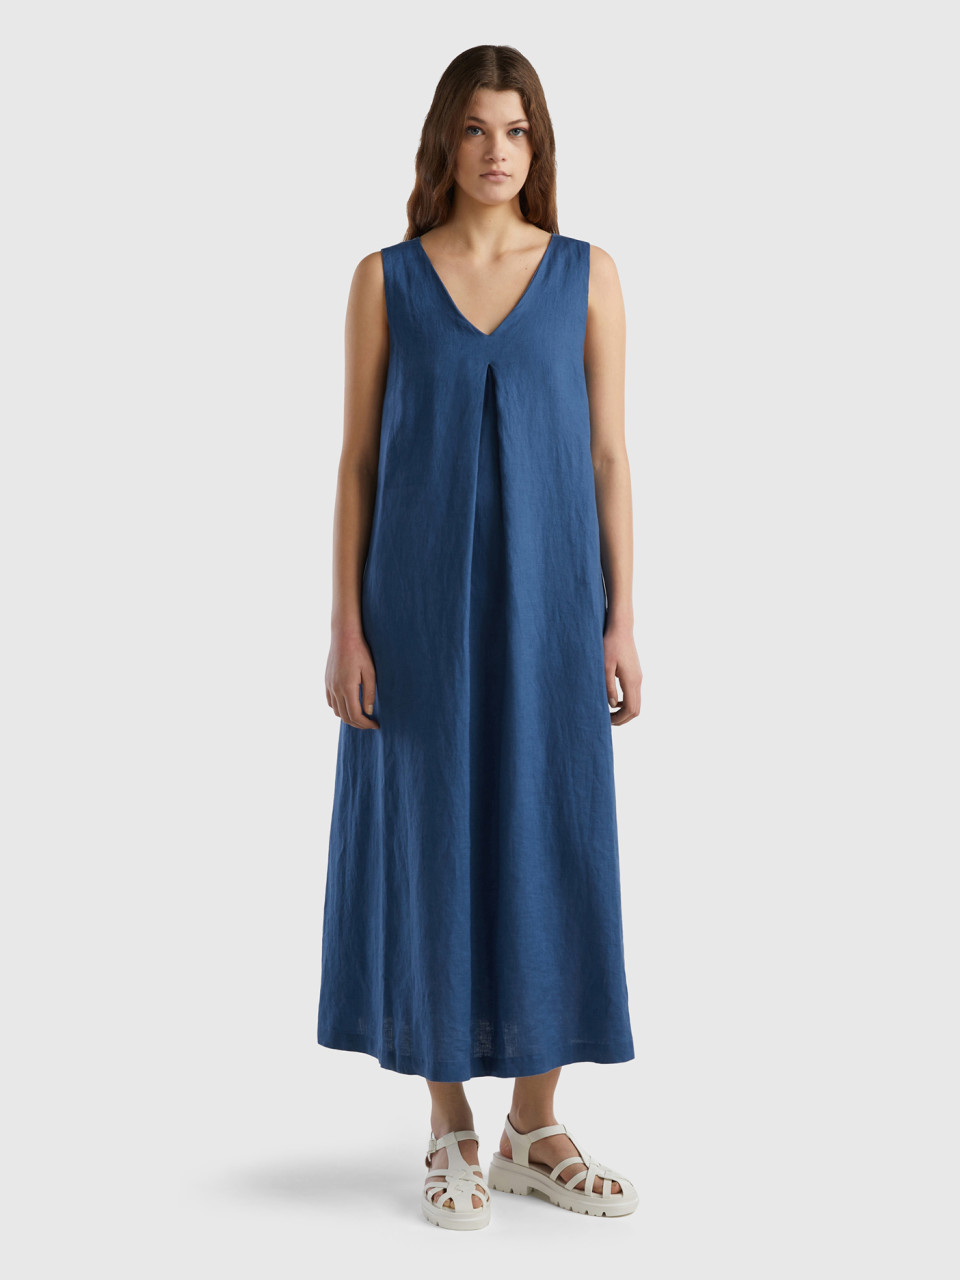 Benetton, Sleeveless Dress In Pure Linen, Air Force Blue, Women